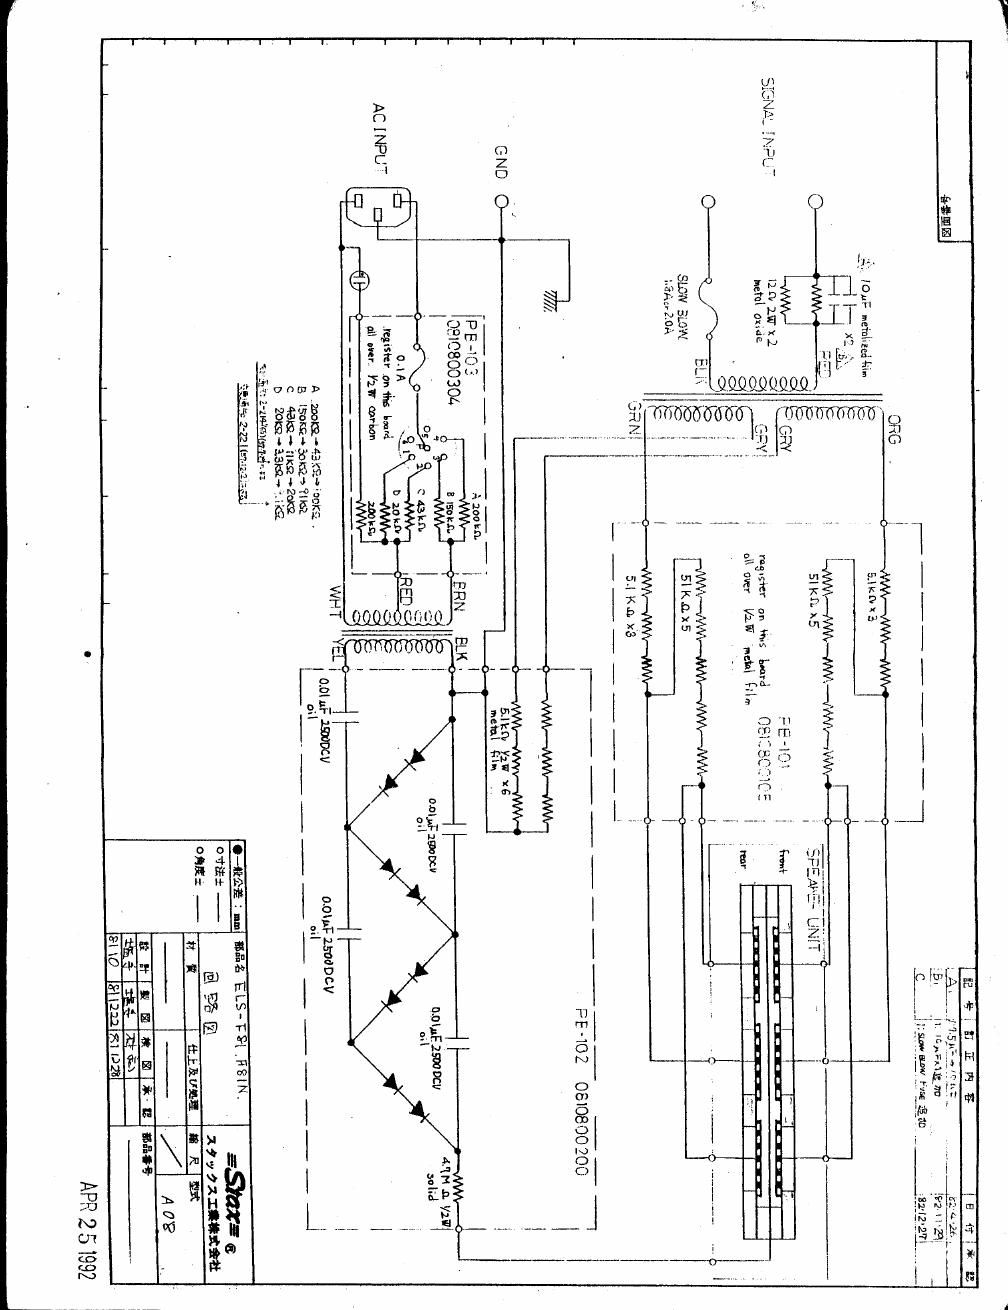 stax elsf 81 schematic